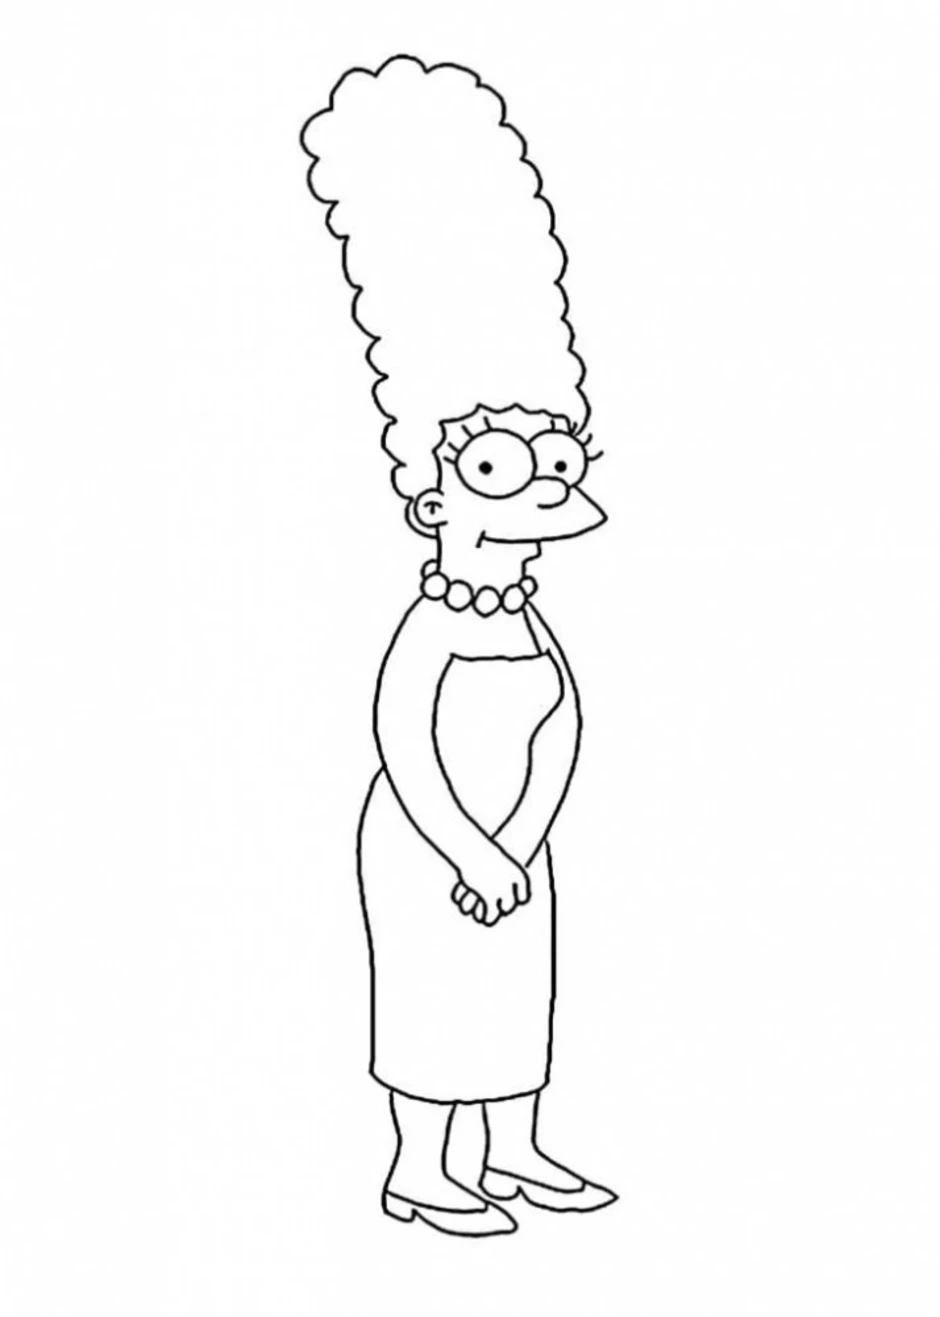 Мардж симпсон черно белая